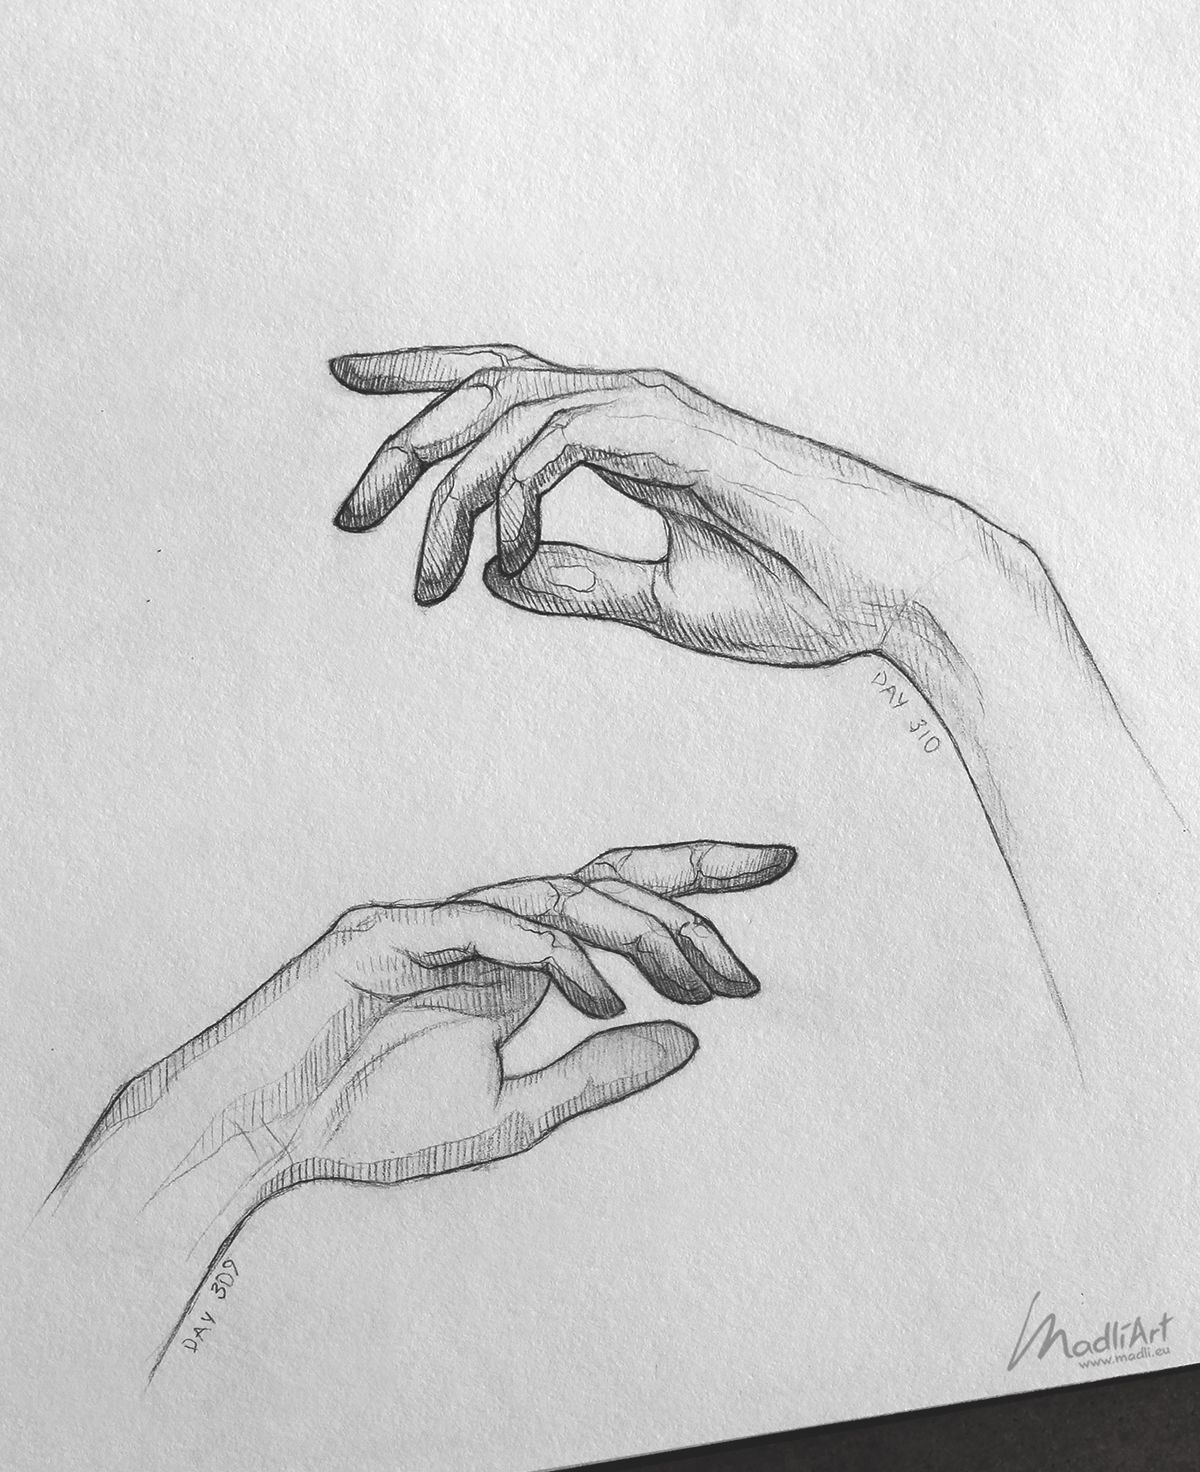 Drawing New Ideas Elegant Sketchbook Drawing Of Hands Close Up I Pencil Art Idea I